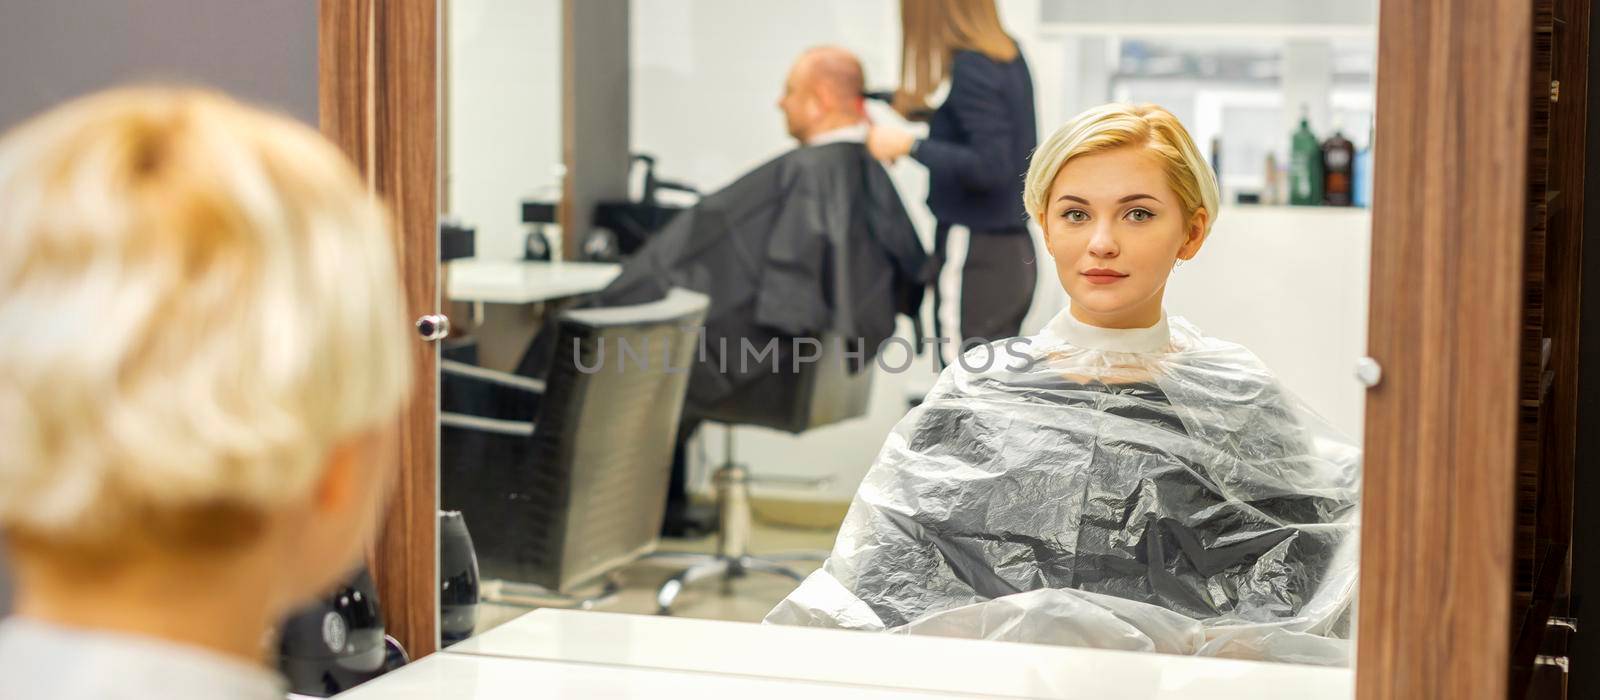 Female client waiting for hairdresser by okskukuruza